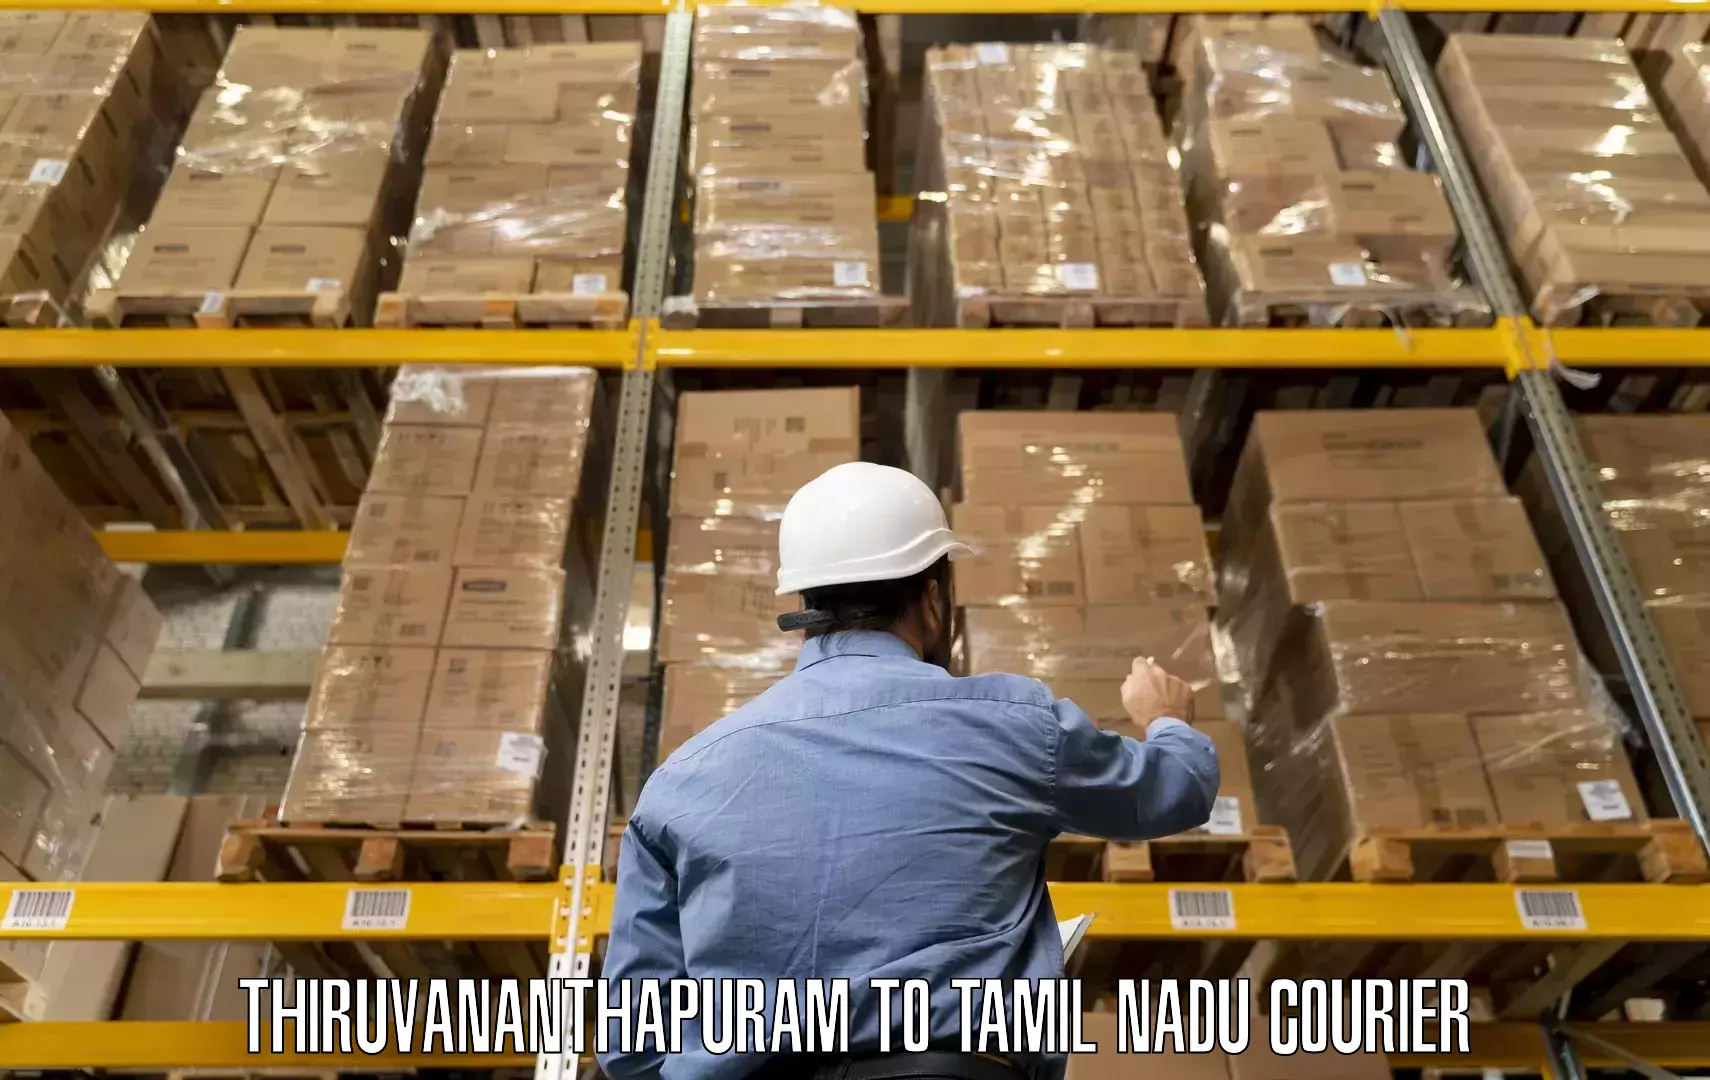 Furniture moving experts Thiruvananthapuram to Karur